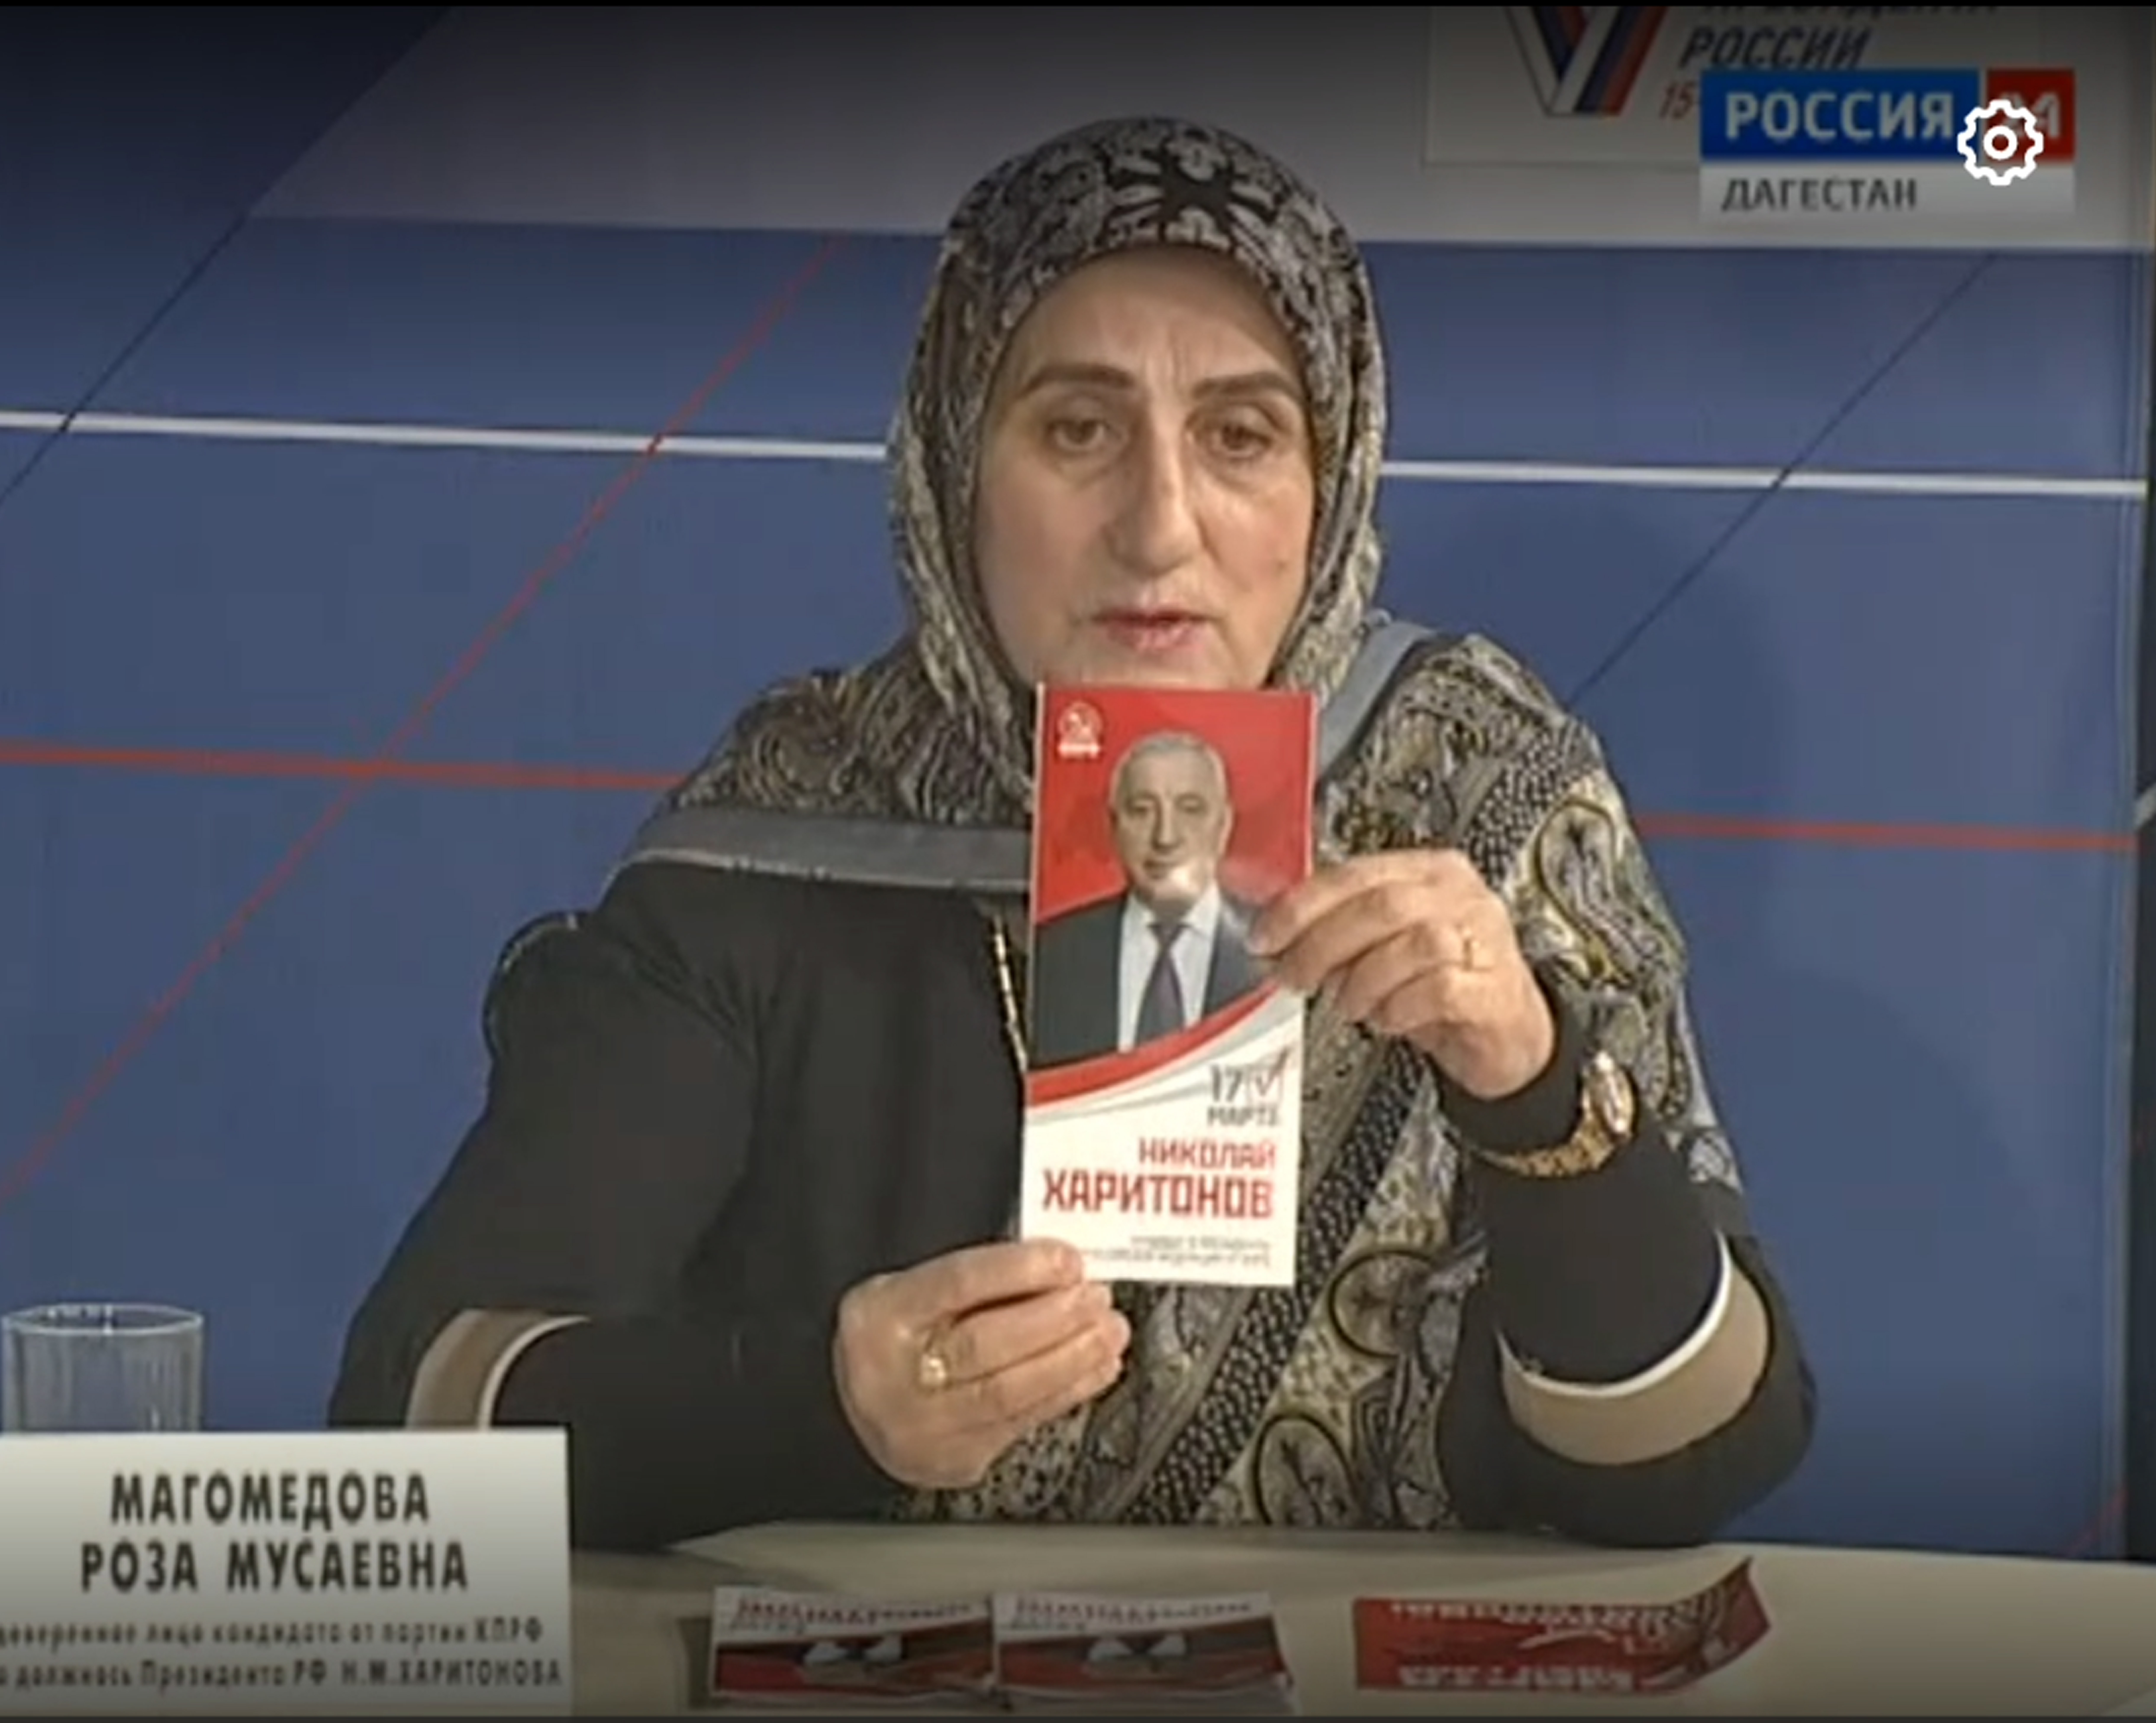 Сегодня, в прямом эфире на телеканалах ВГТРК Россия-1 и Россия-24 прошли дебаты доверенных лиц кандидатов в Президенты РФ